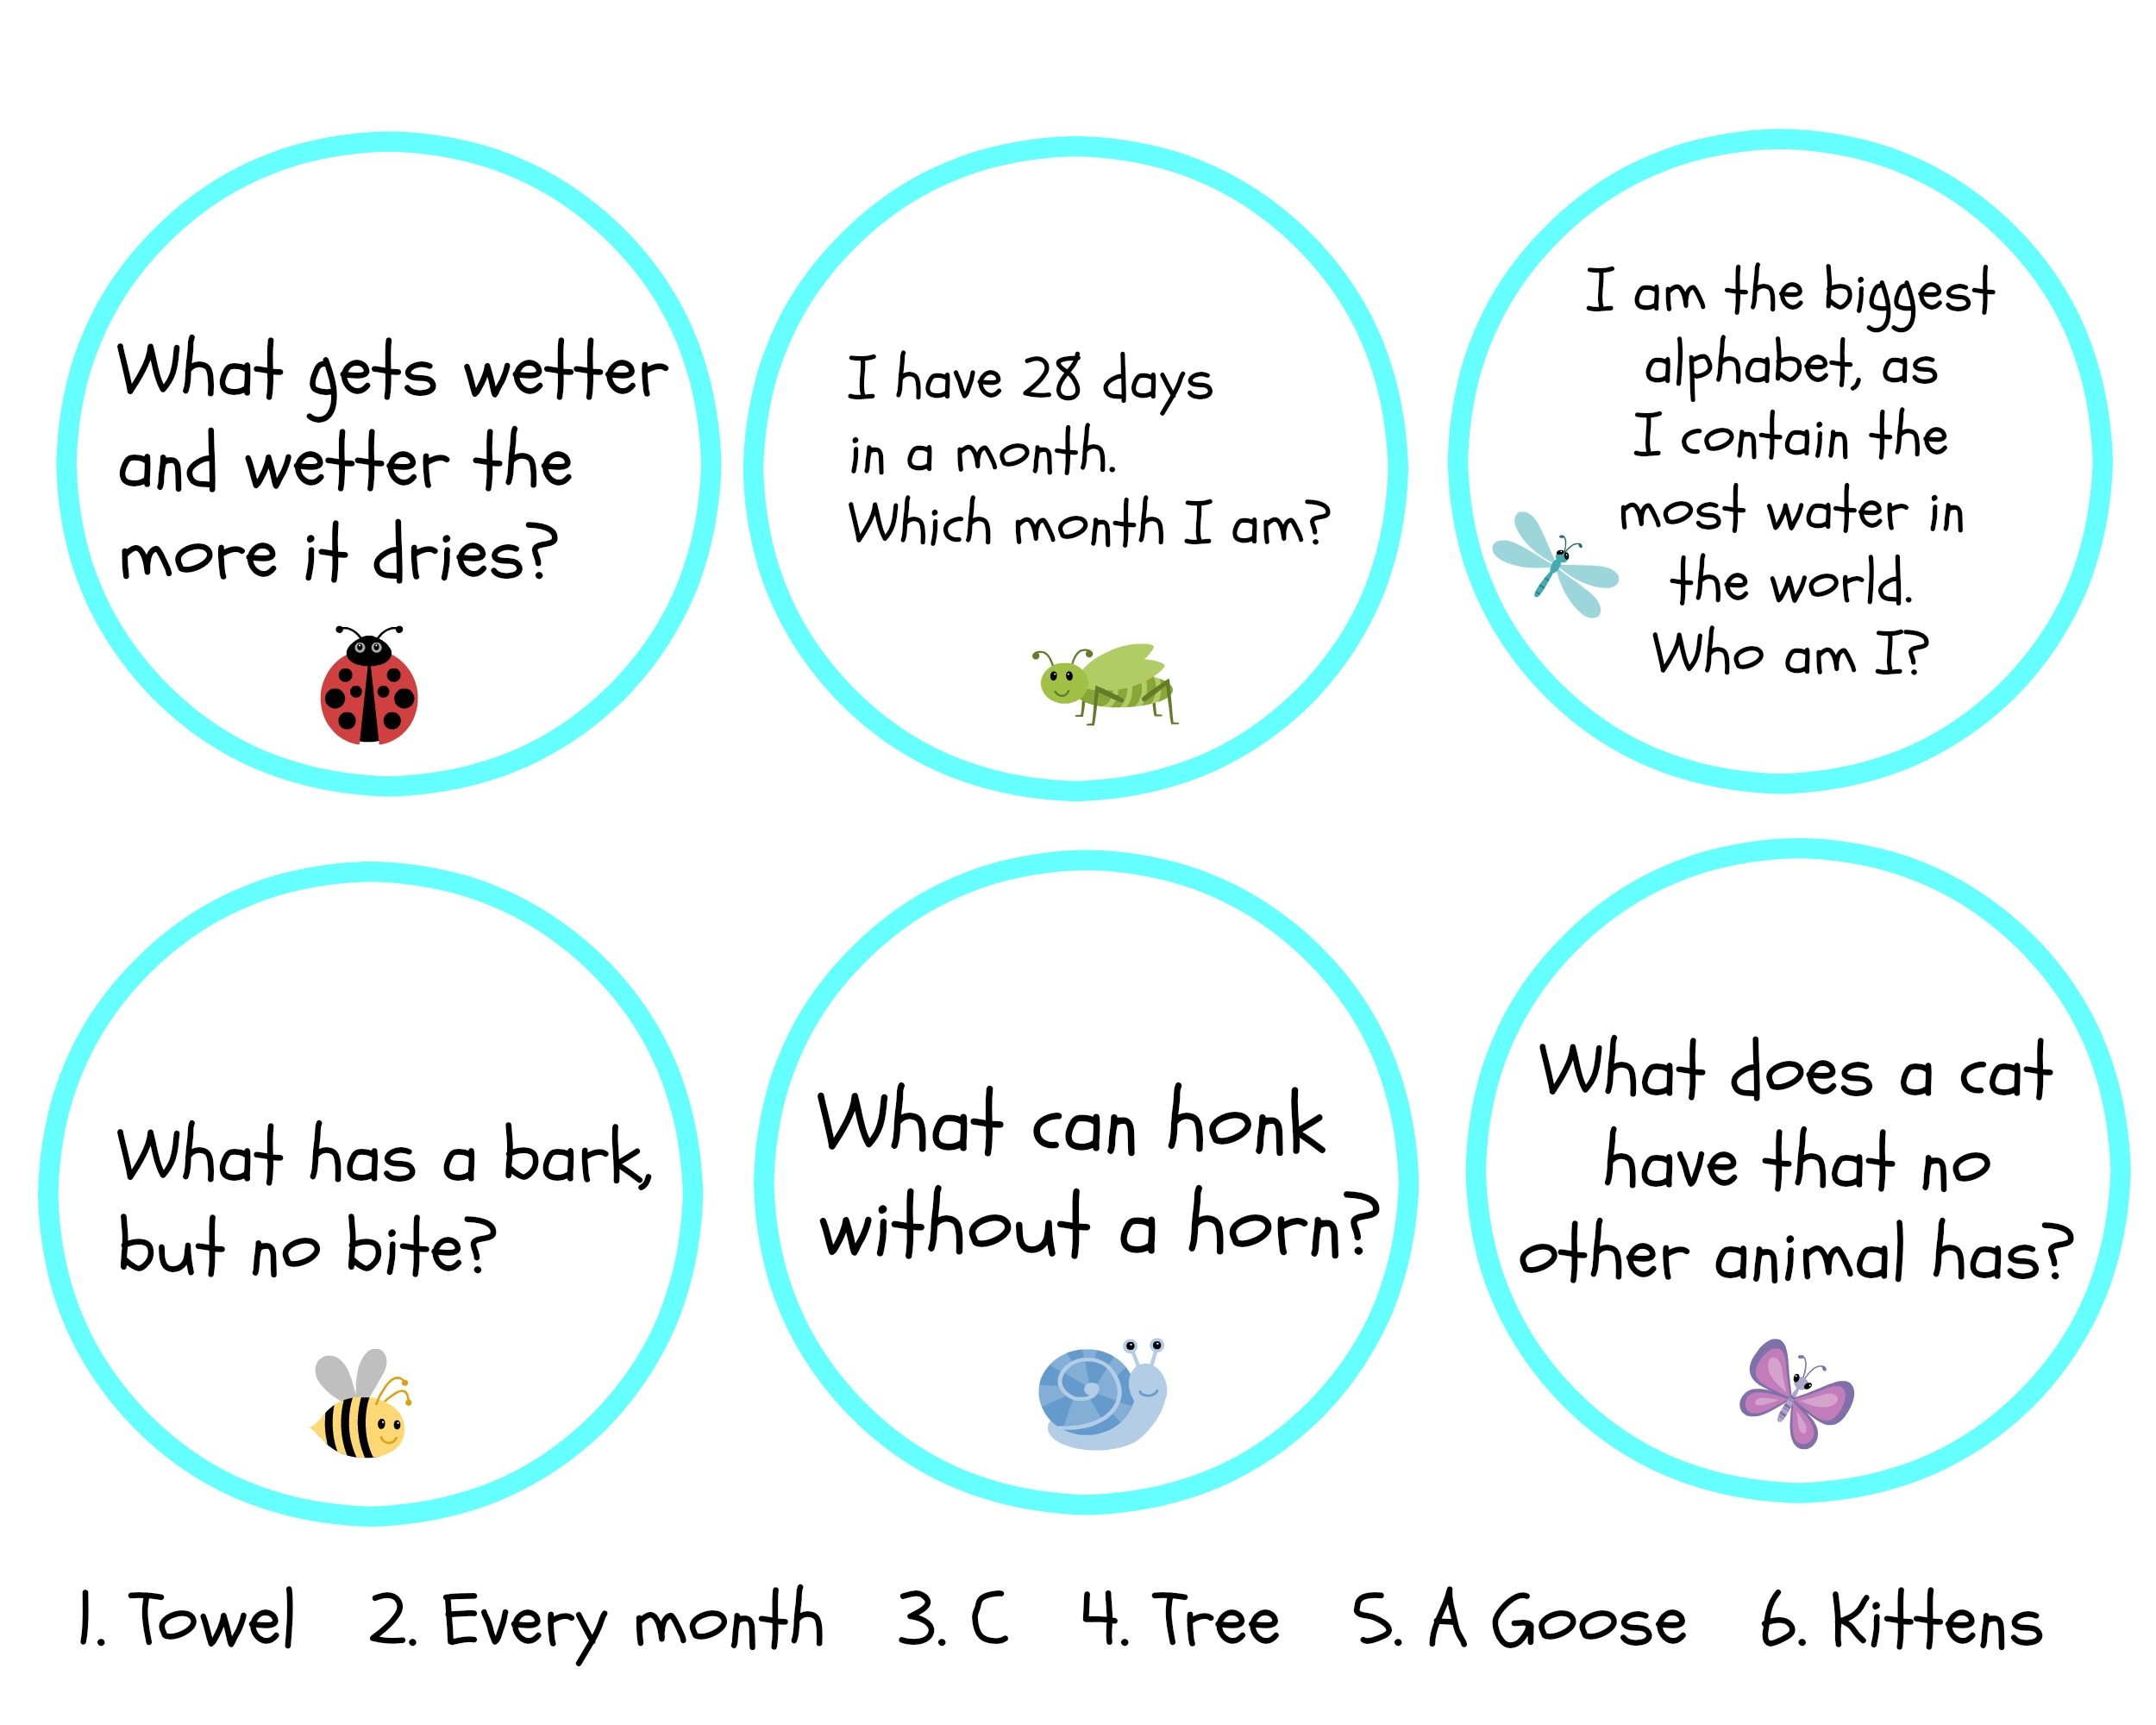 riddles-for-kindergarten-kids-riddles-for-kids